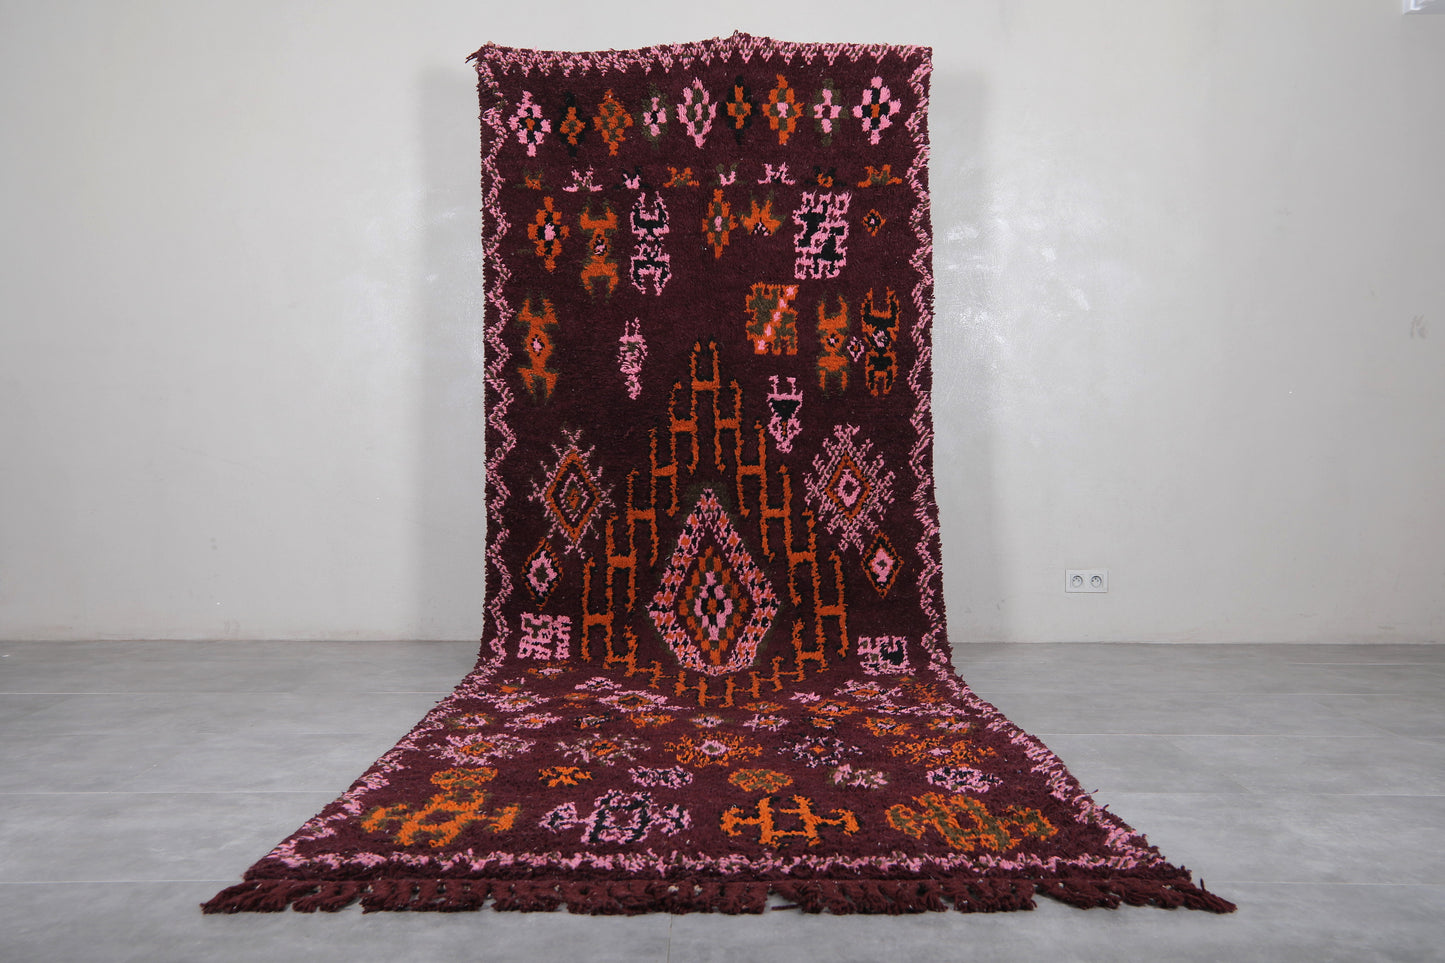 Moroccan rug 5 X 14.4 Feet